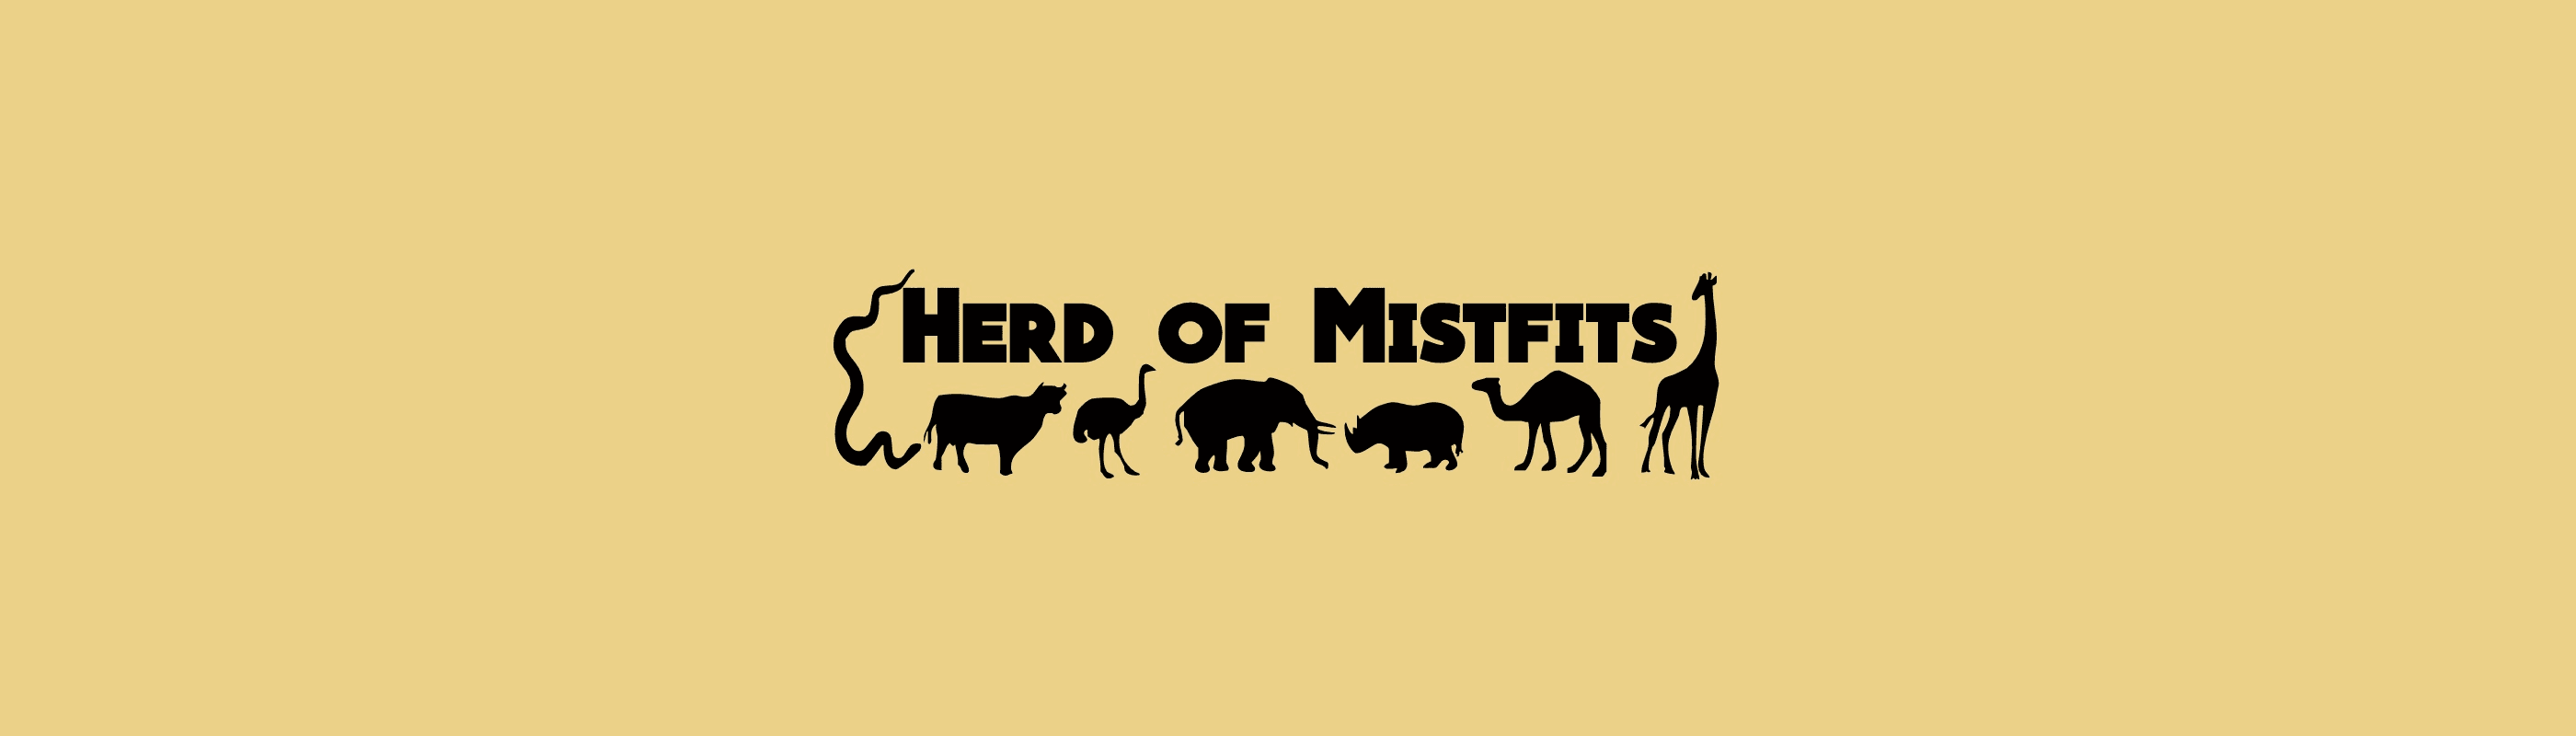 HerdofMisfits banner